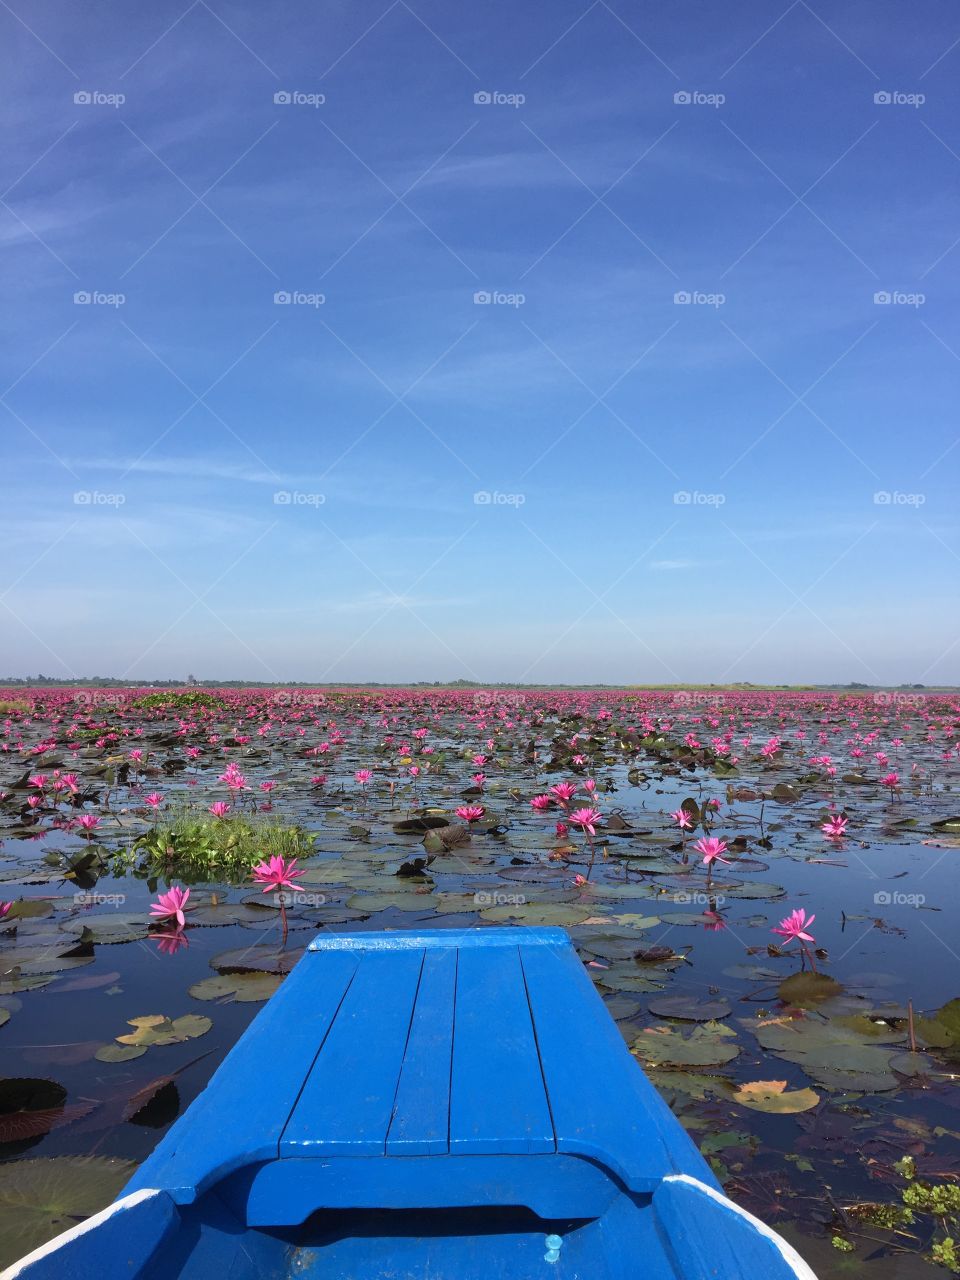 Thailand Pink lake flower